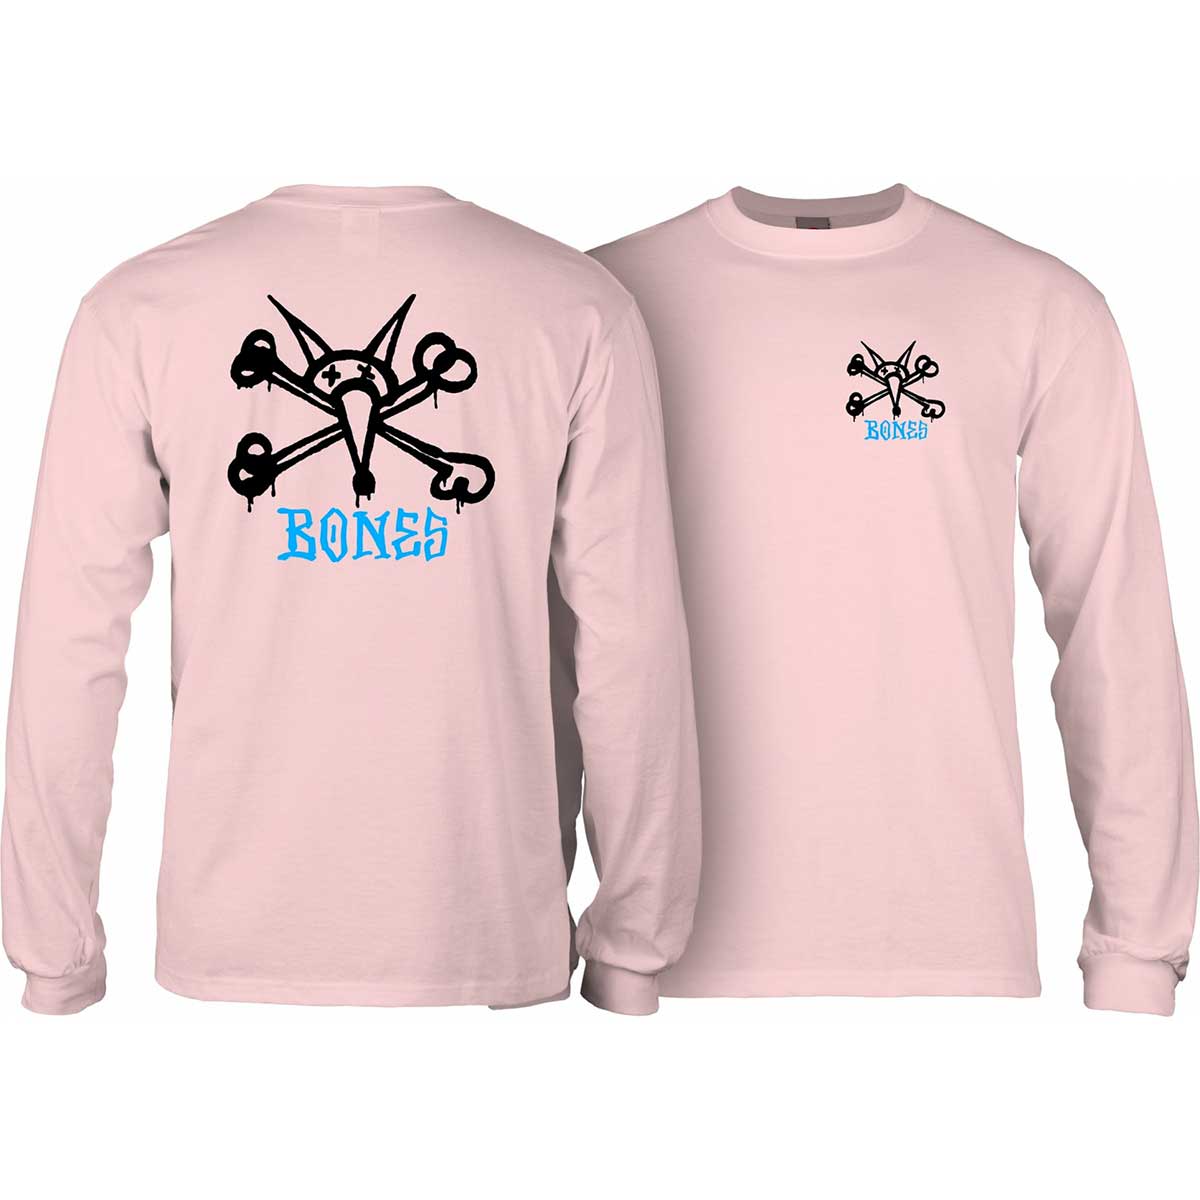 POWELL PERALTA "Rat Bones" Skateboard T-Shirt SKY BLUE S M L XL Bones Brigade 